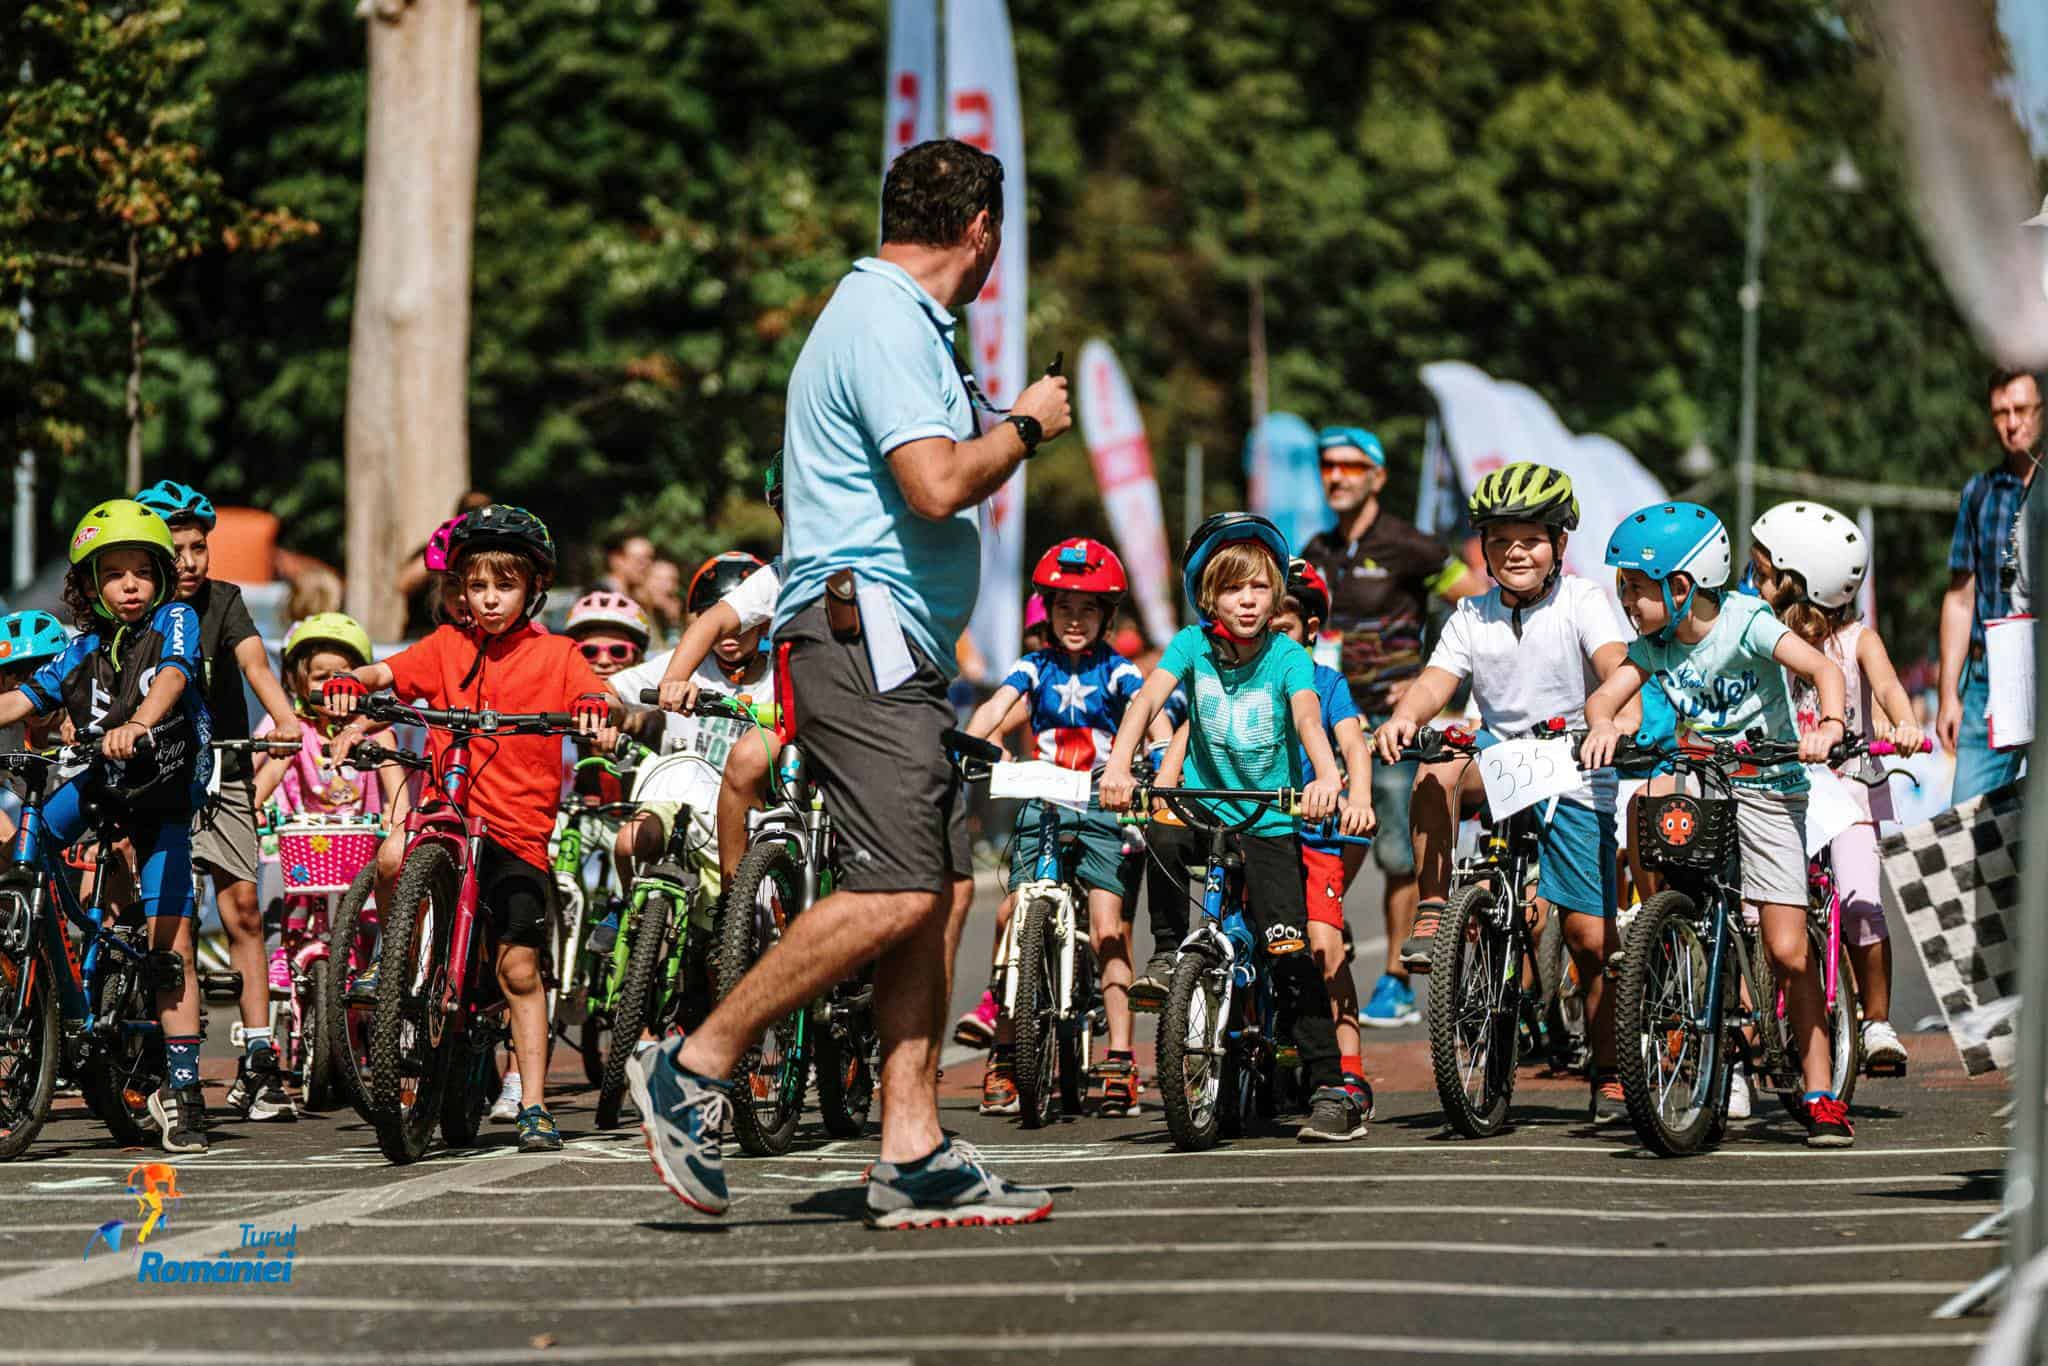 Disapproved factory Tiny Curse de biciclete pentru copii, în cadrul competiției ,,Turul României''.  Competițiile au loc la Cetatea Făgăraș, înscrierea este gratuită -  SalutFagaras